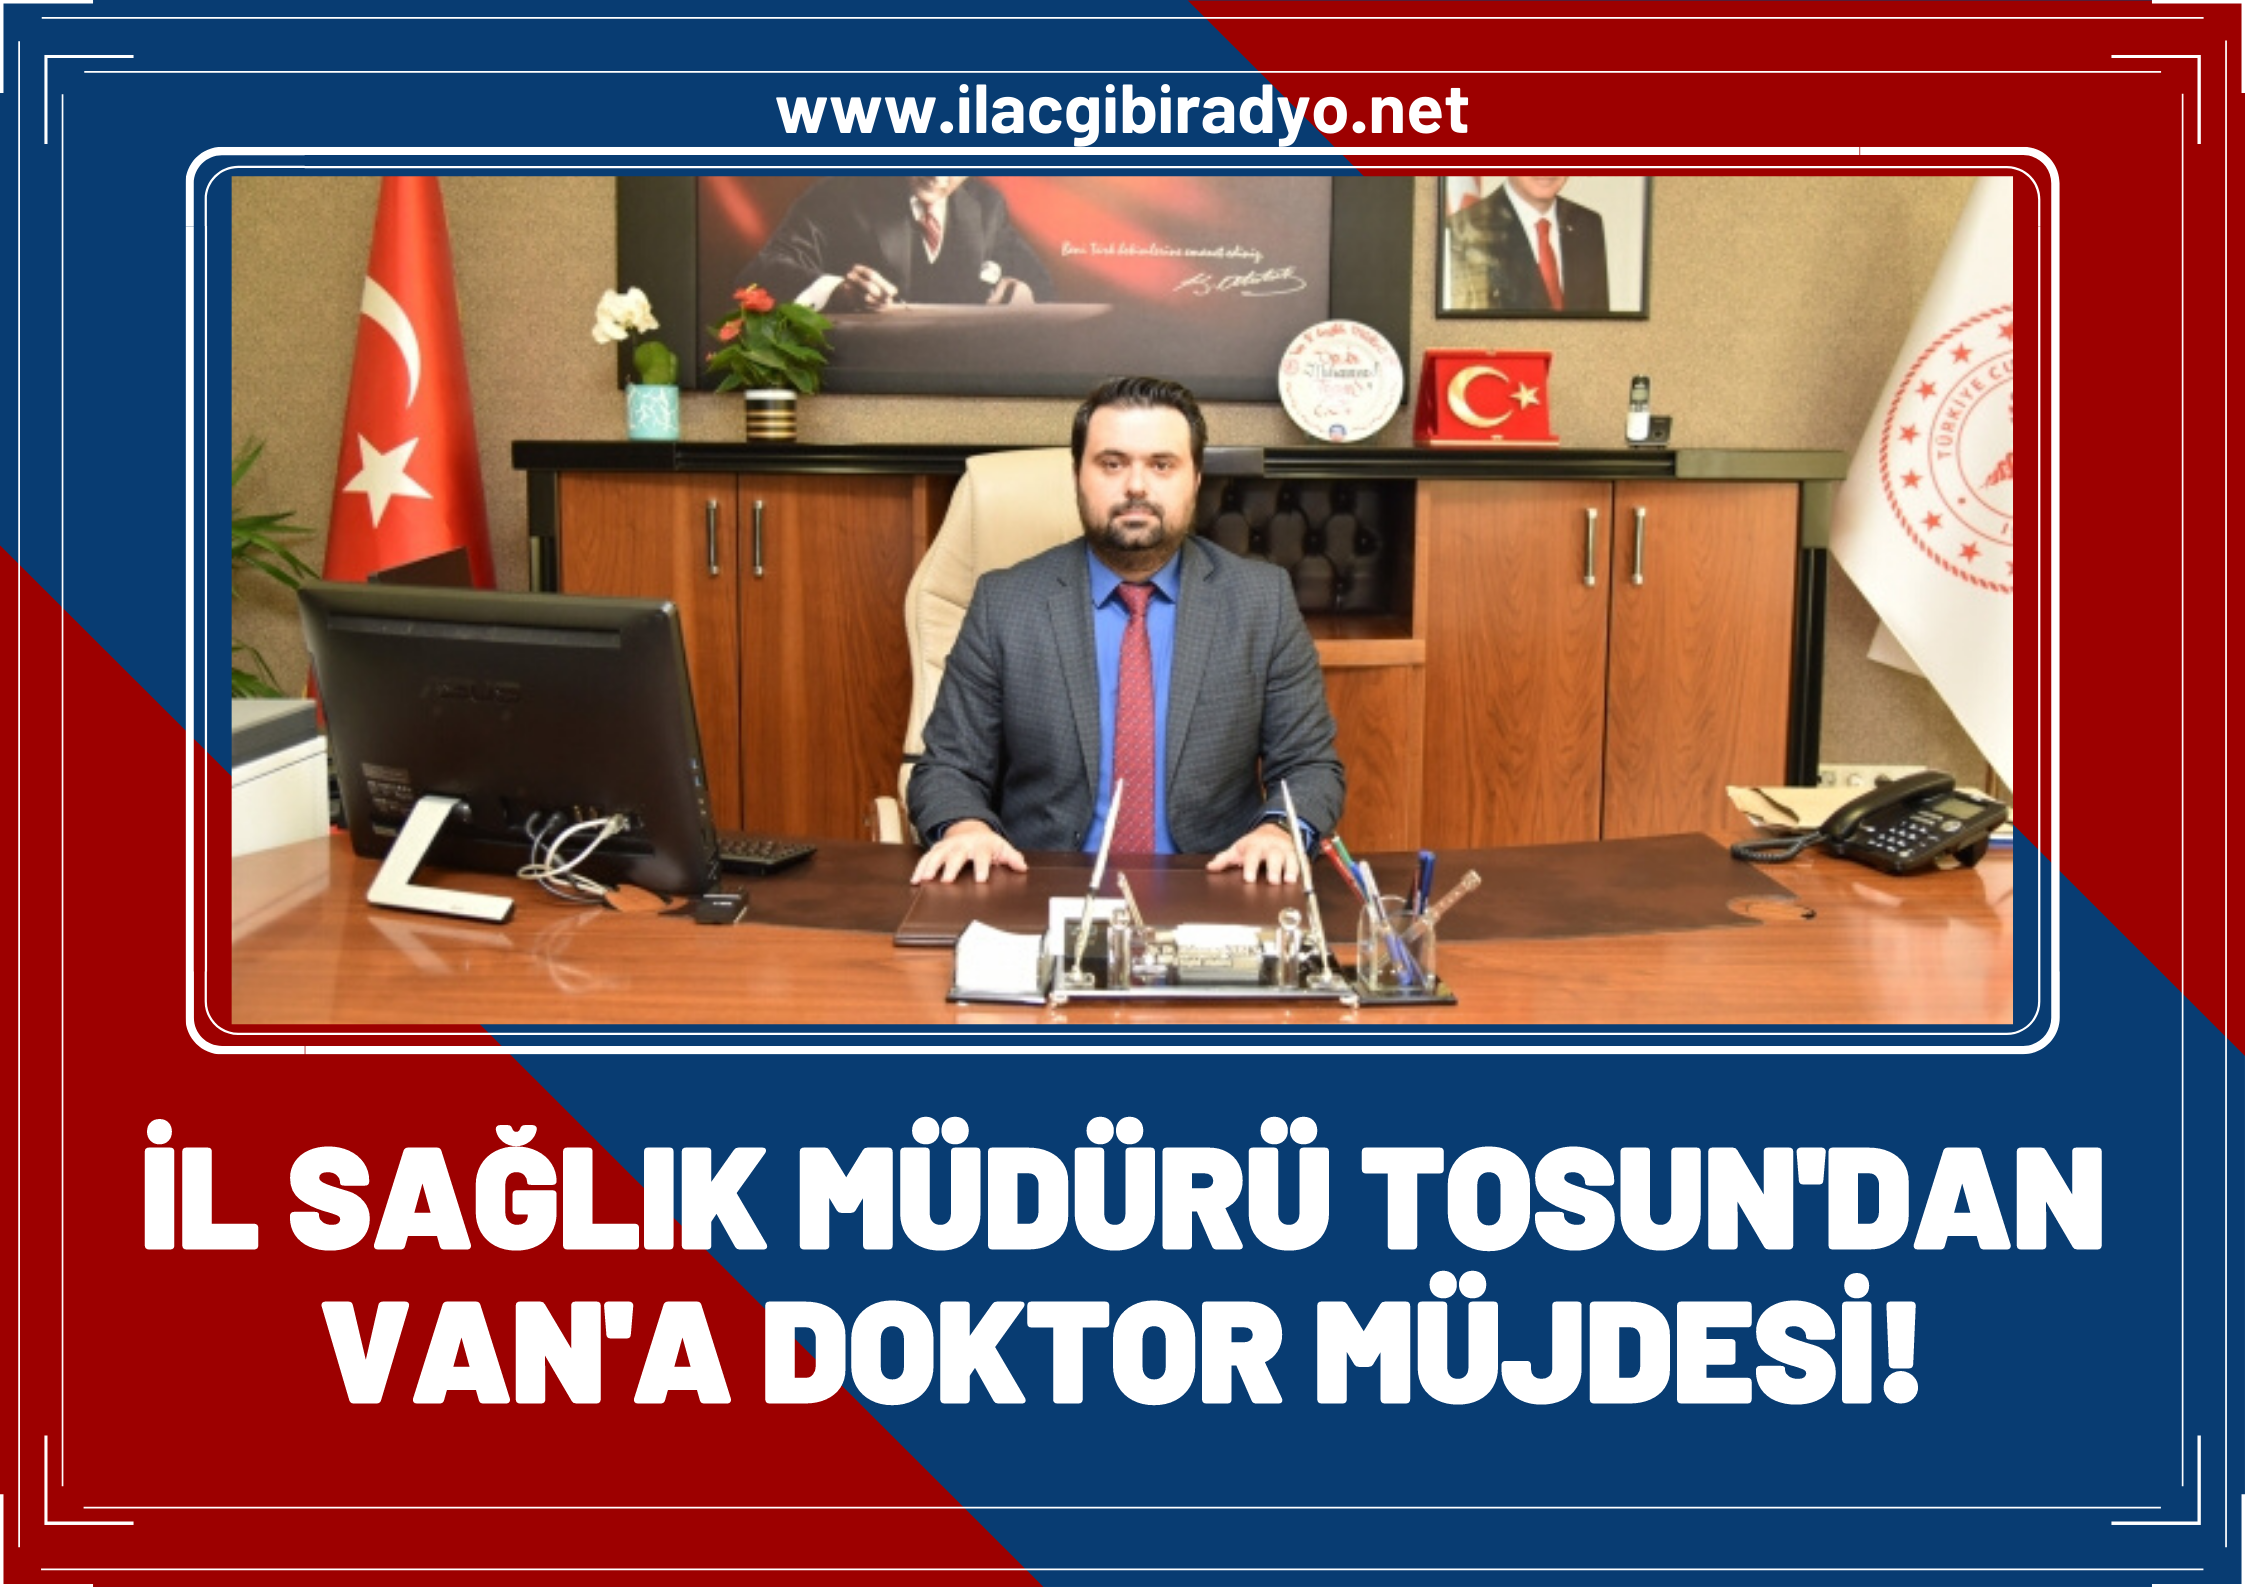 Van İl Sağlık Müdürü Muhammed Tosun’dan Van’a doktor müjdesi!